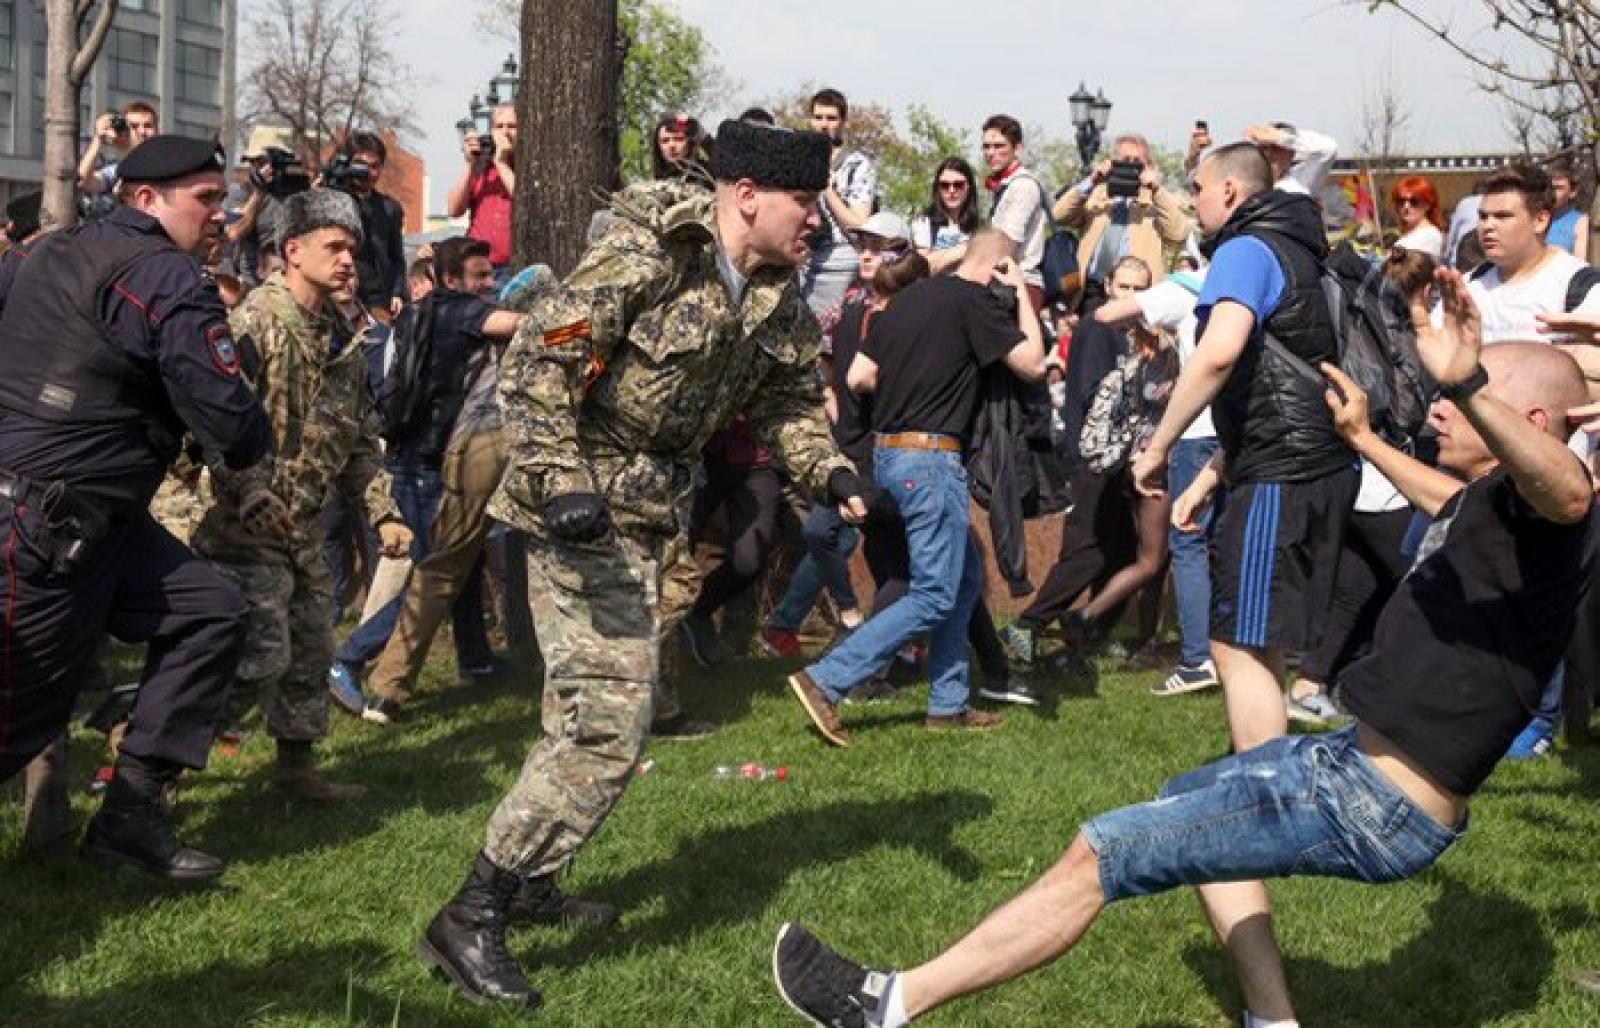 5 мая 2018 года. Казаки нагайками разгоняют митинг в Москве. Казаки избивают людей нагайками. Казаки разгоняют демонстрацию в Москве.